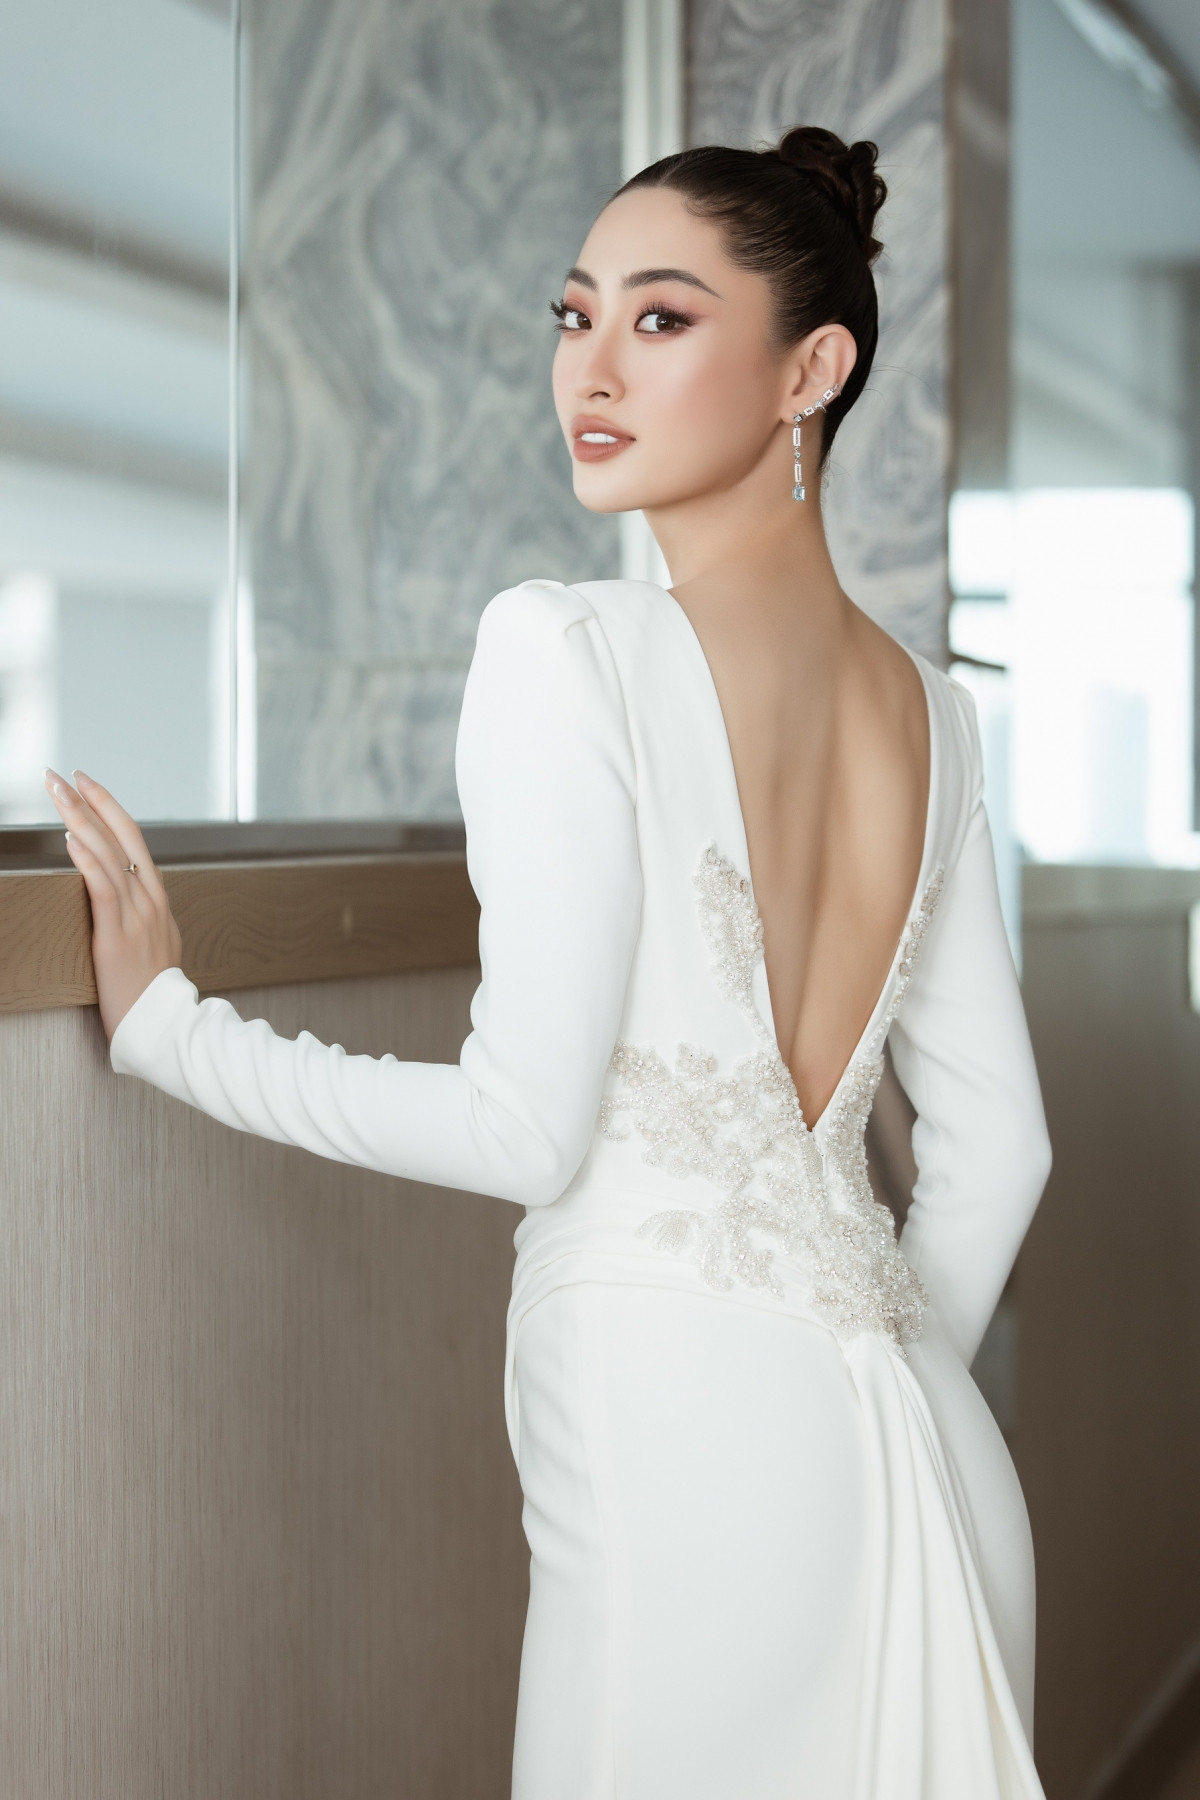 Không chỉ đồng hành với Miss World Vietnam 2022 với vai trò đương kim Hoa hậu mà Lương Thùy Linh cũng nắm giữ vai trò giám khảo để chọn ra người kế nhiệm năm nay./.